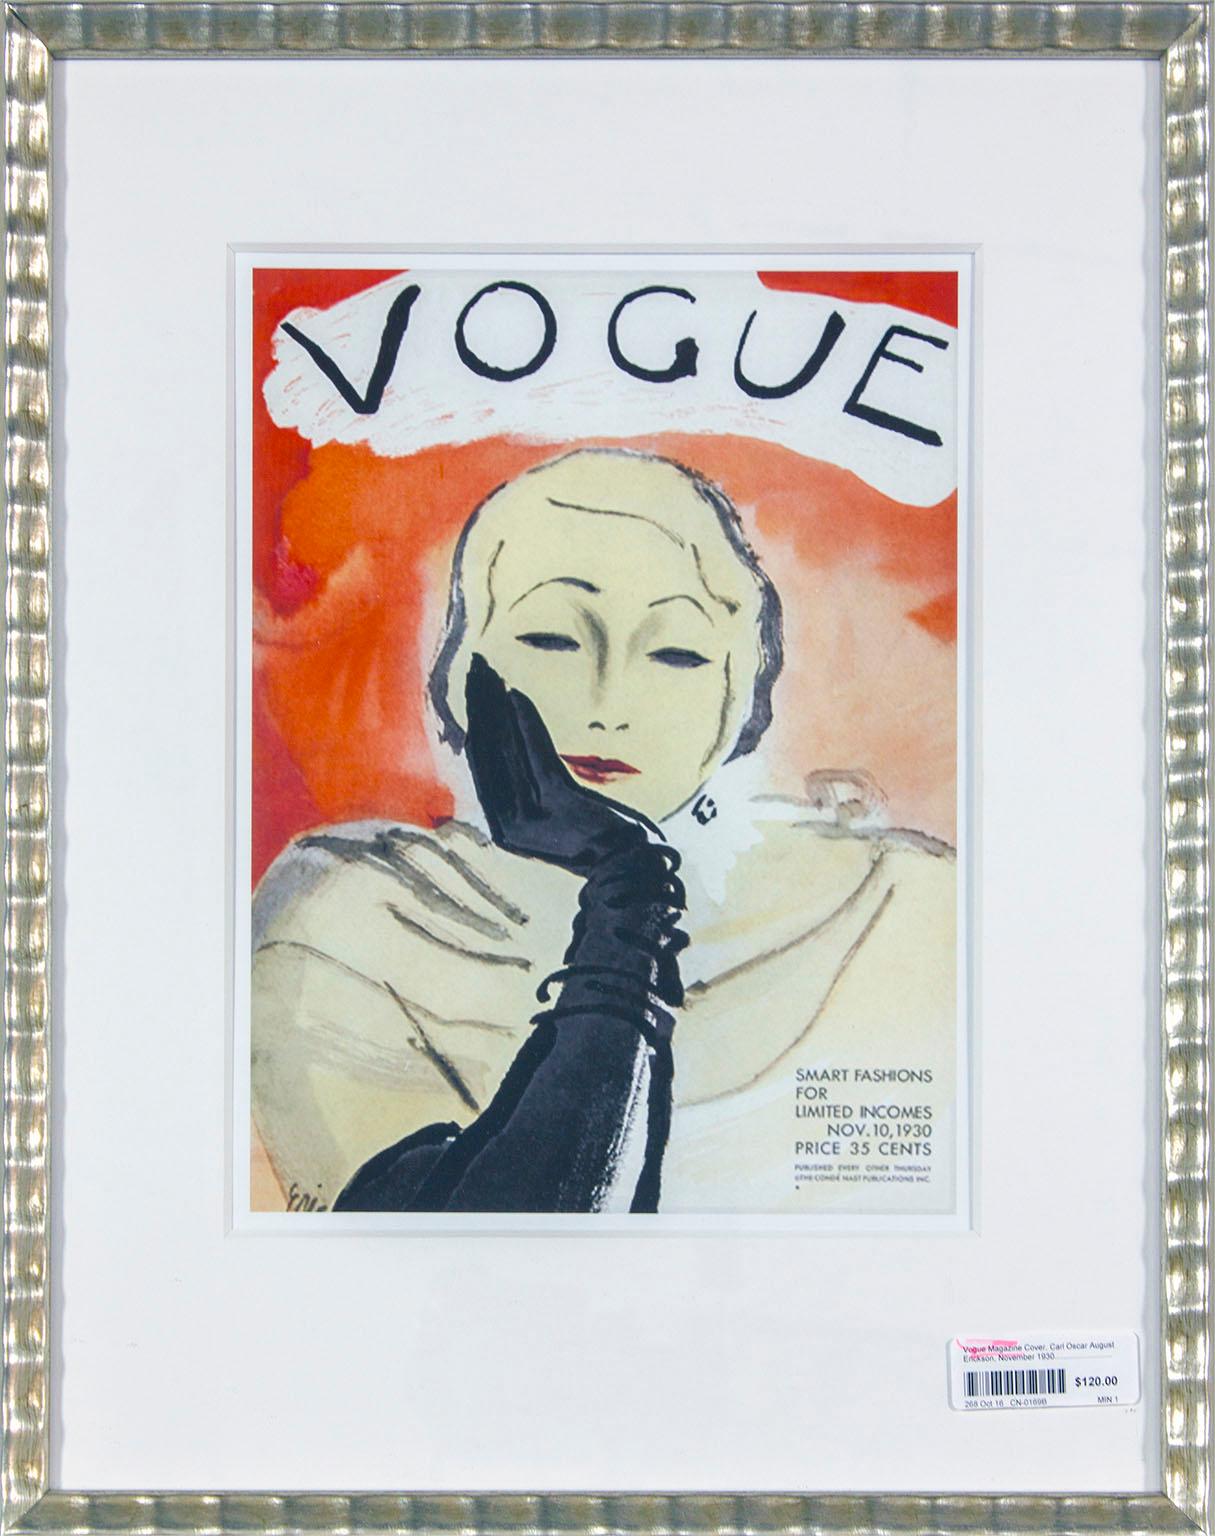 Carl Oscar August Erickson Portrait Print – Gerahmter Druck des 10. November 1930, Zeitschriftencovers der „Vogue“ von Carl Erickson